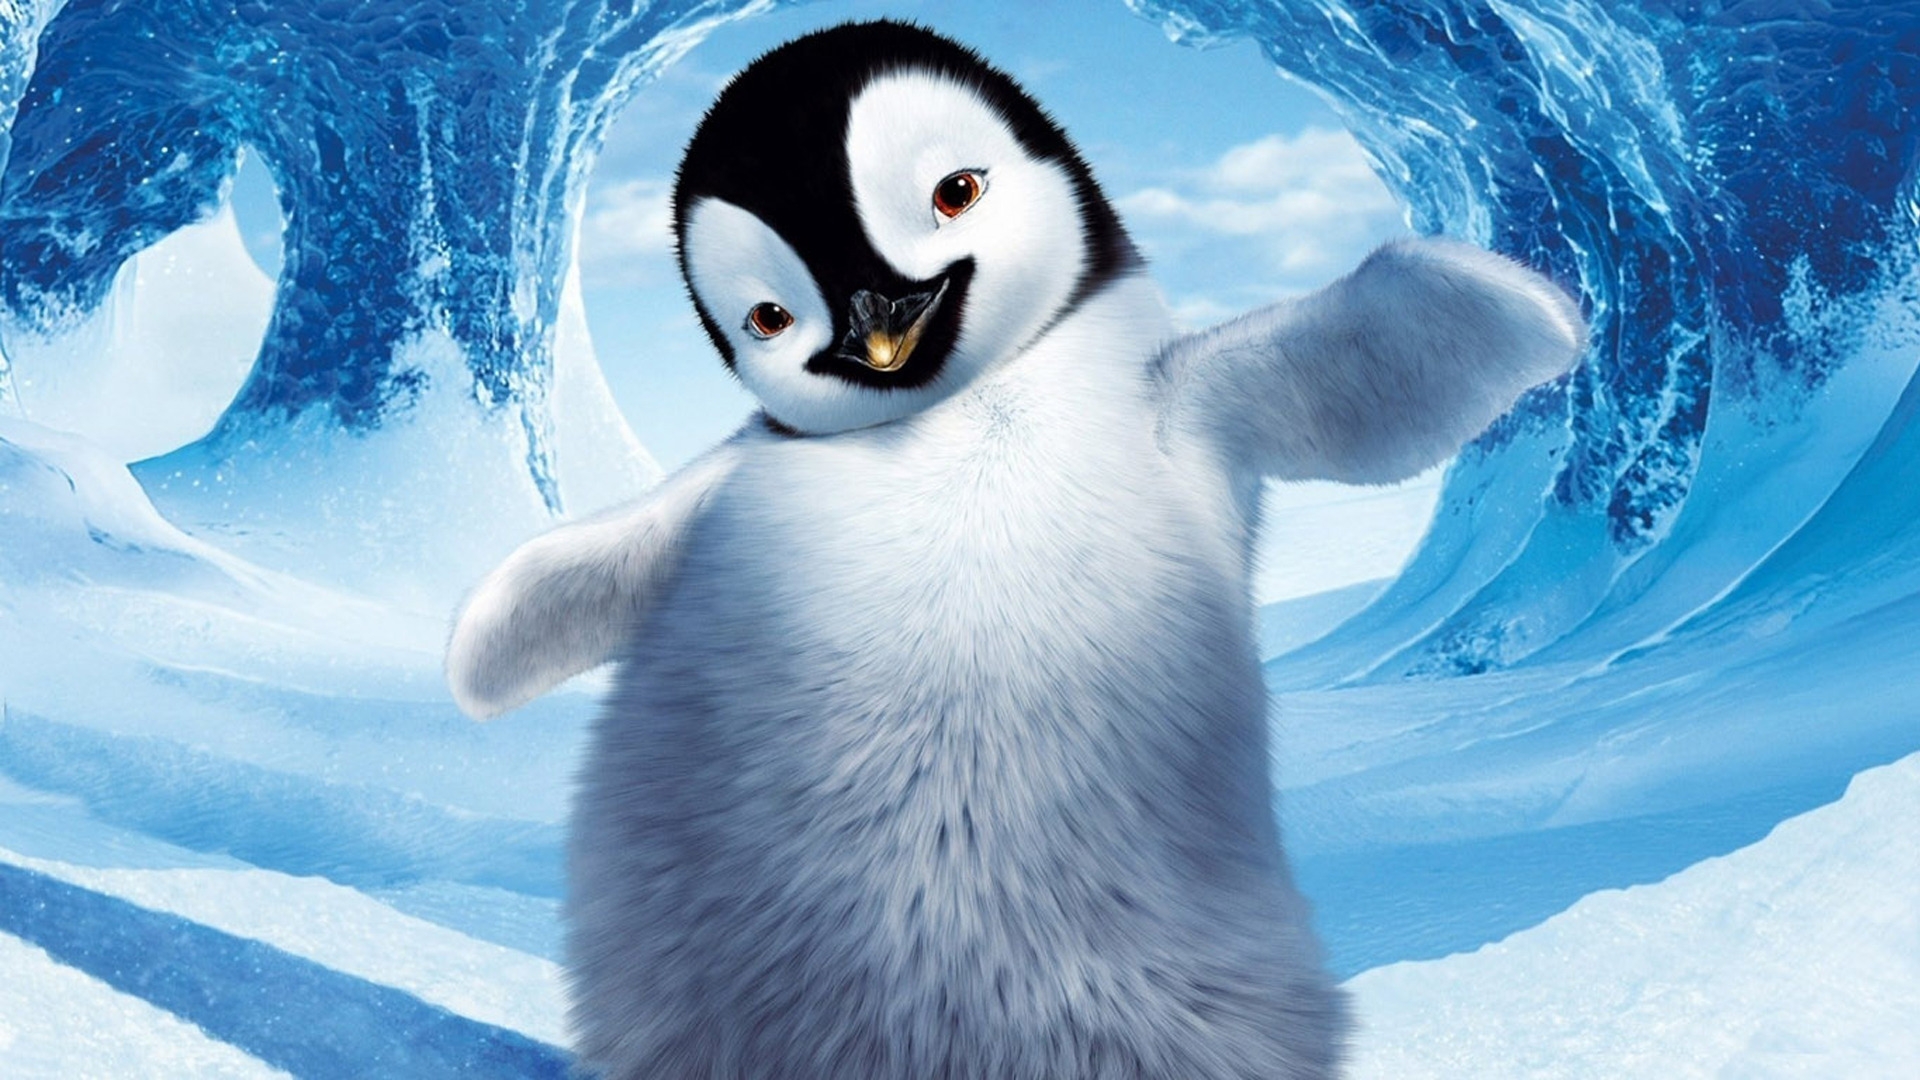 Happy Feet Penguin for 1920 x 1080 HDTV 1080p resolution